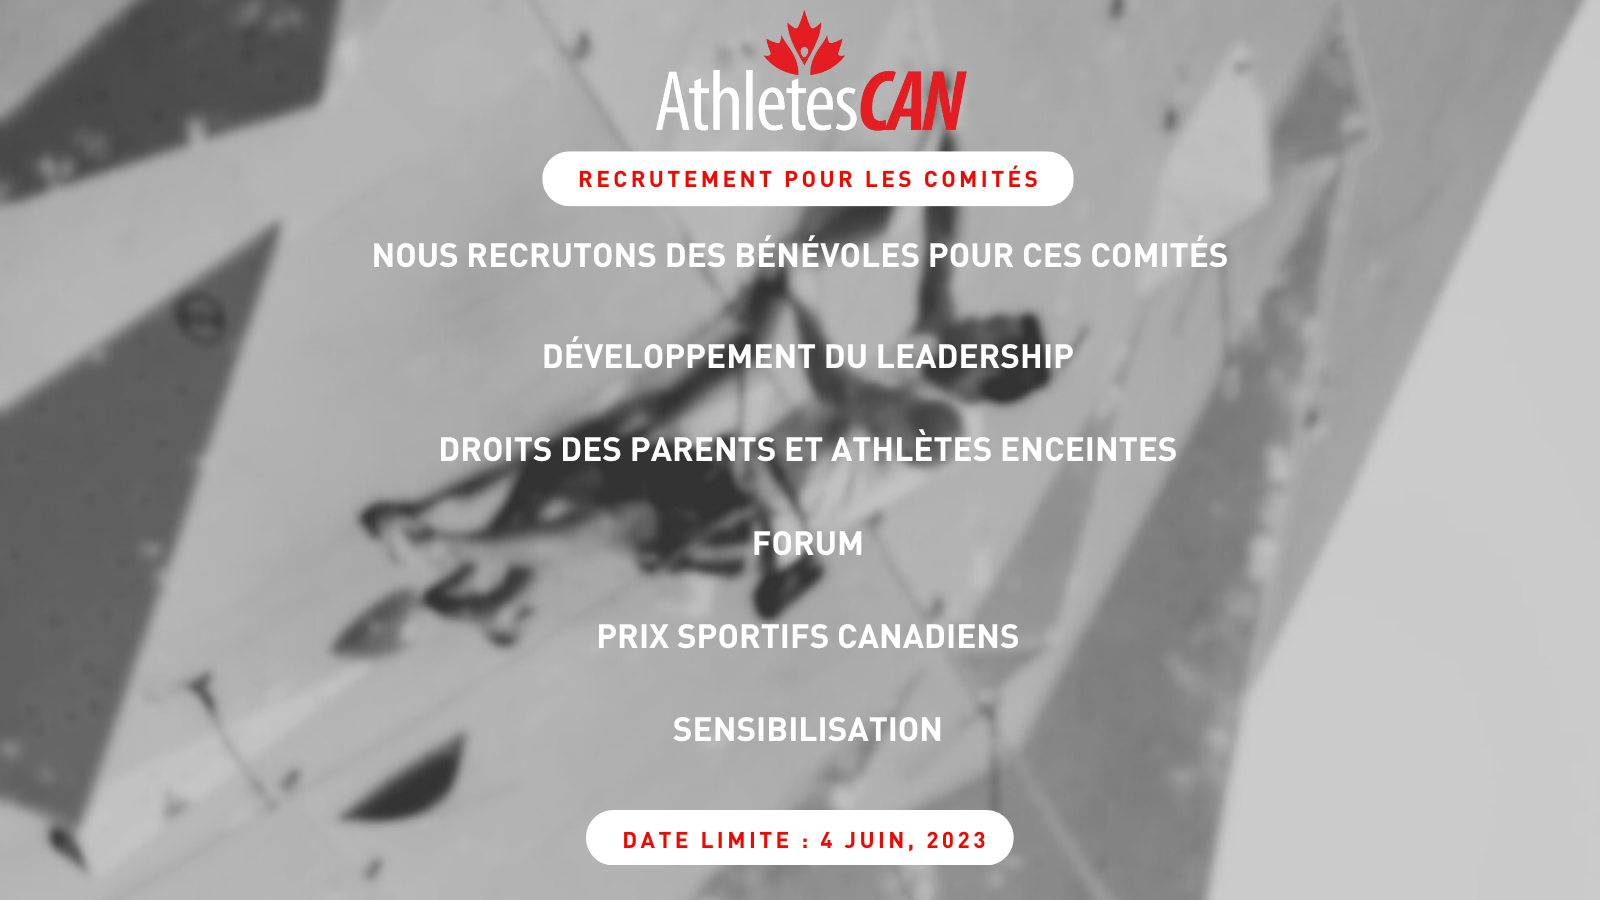 Nous recrutons des bénévoles pour ces comités : Forum, Développement du leadership, Droits des parents et athlètes enceintes, Prix sportifs canadiens, Sensibilization